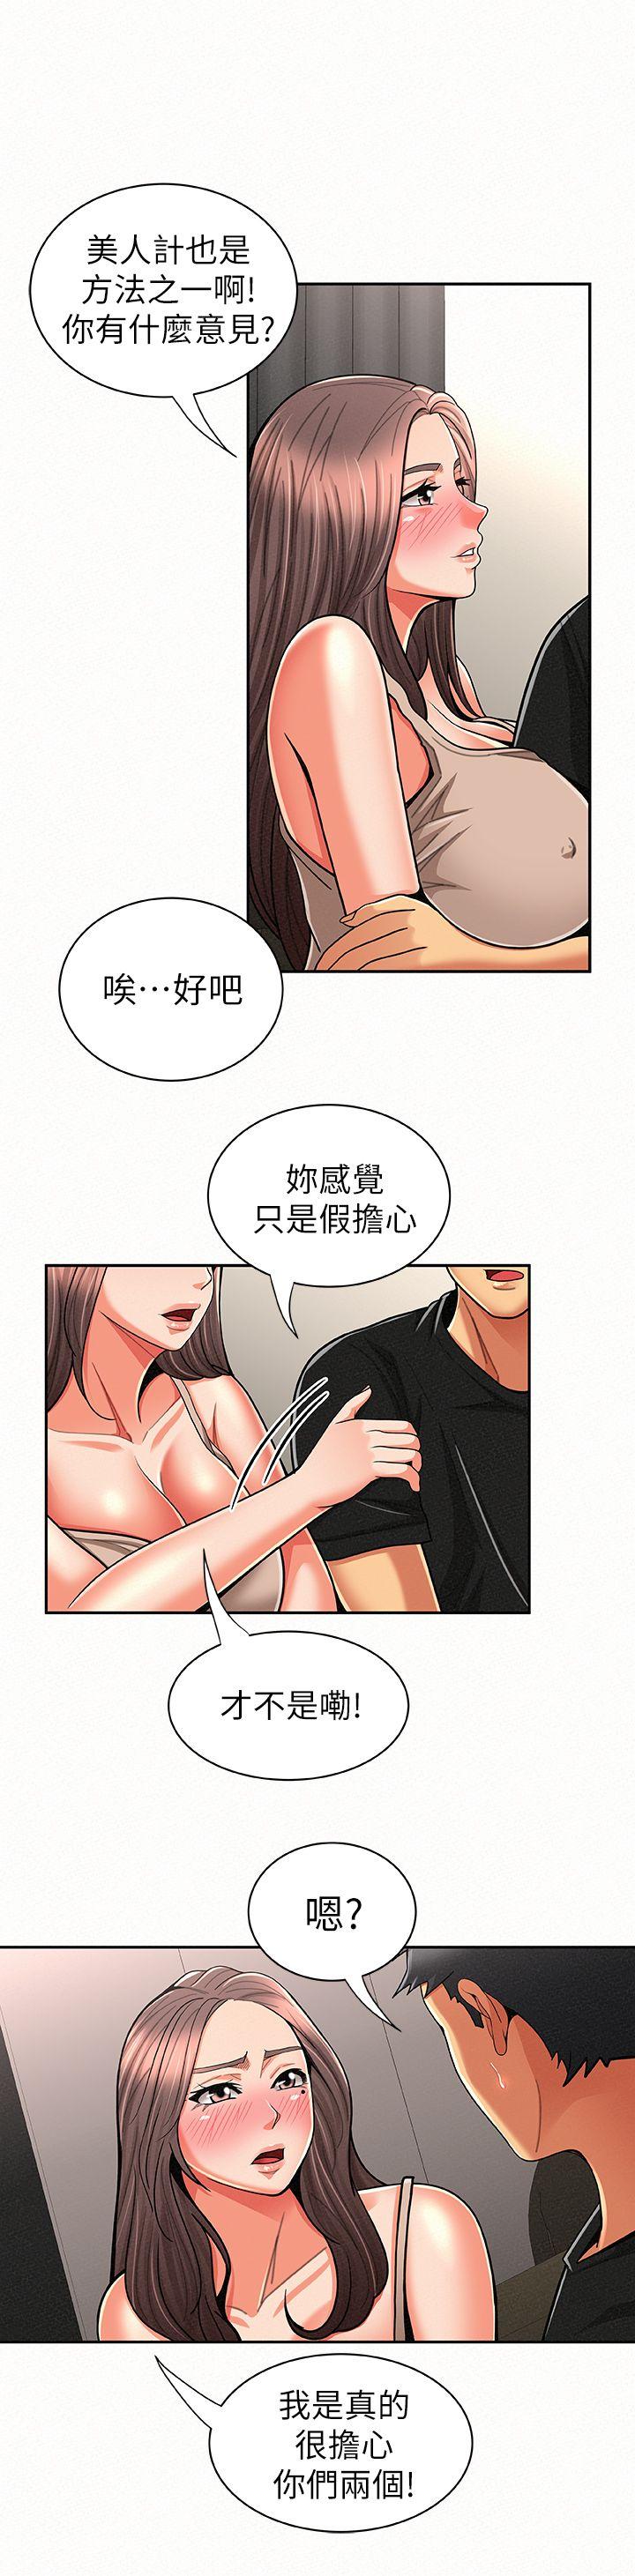 韩国污漫画 報告夫人 第21话-无法停止的关系 2